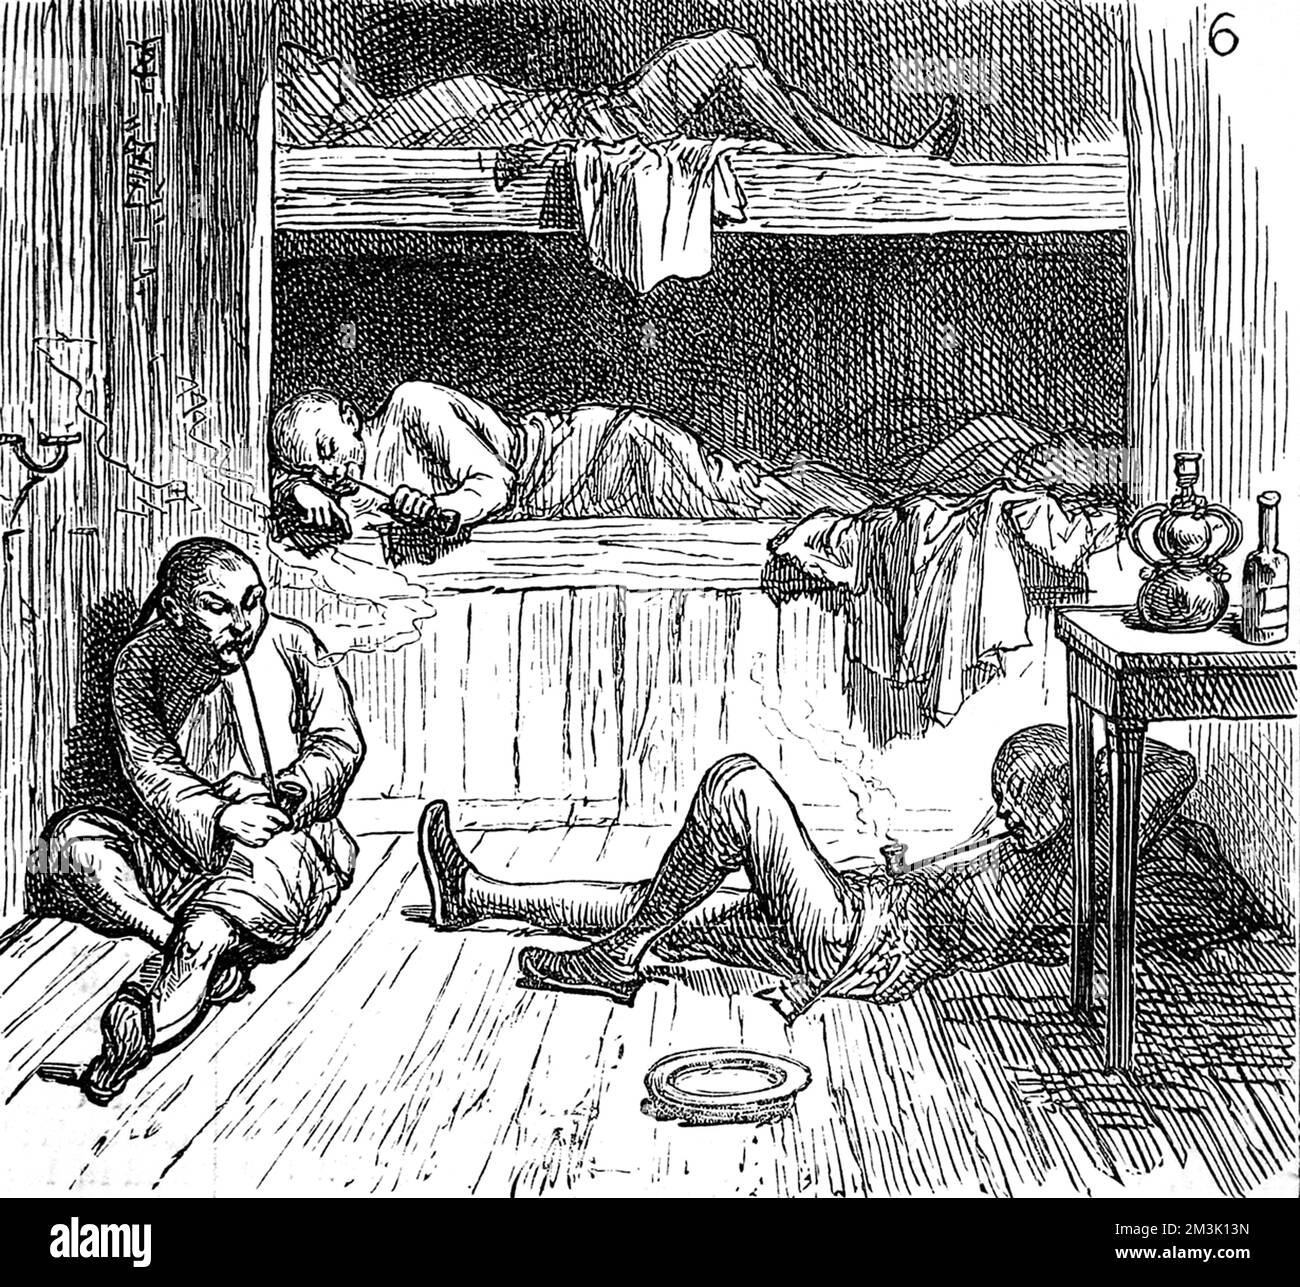 Una tana di oppio, che mostra la gente cinese sotto l'influenza della droga, sdraiata in cuccette o sul pavimento, fumando lunghe pipe. Data: 1880 Foto Stock